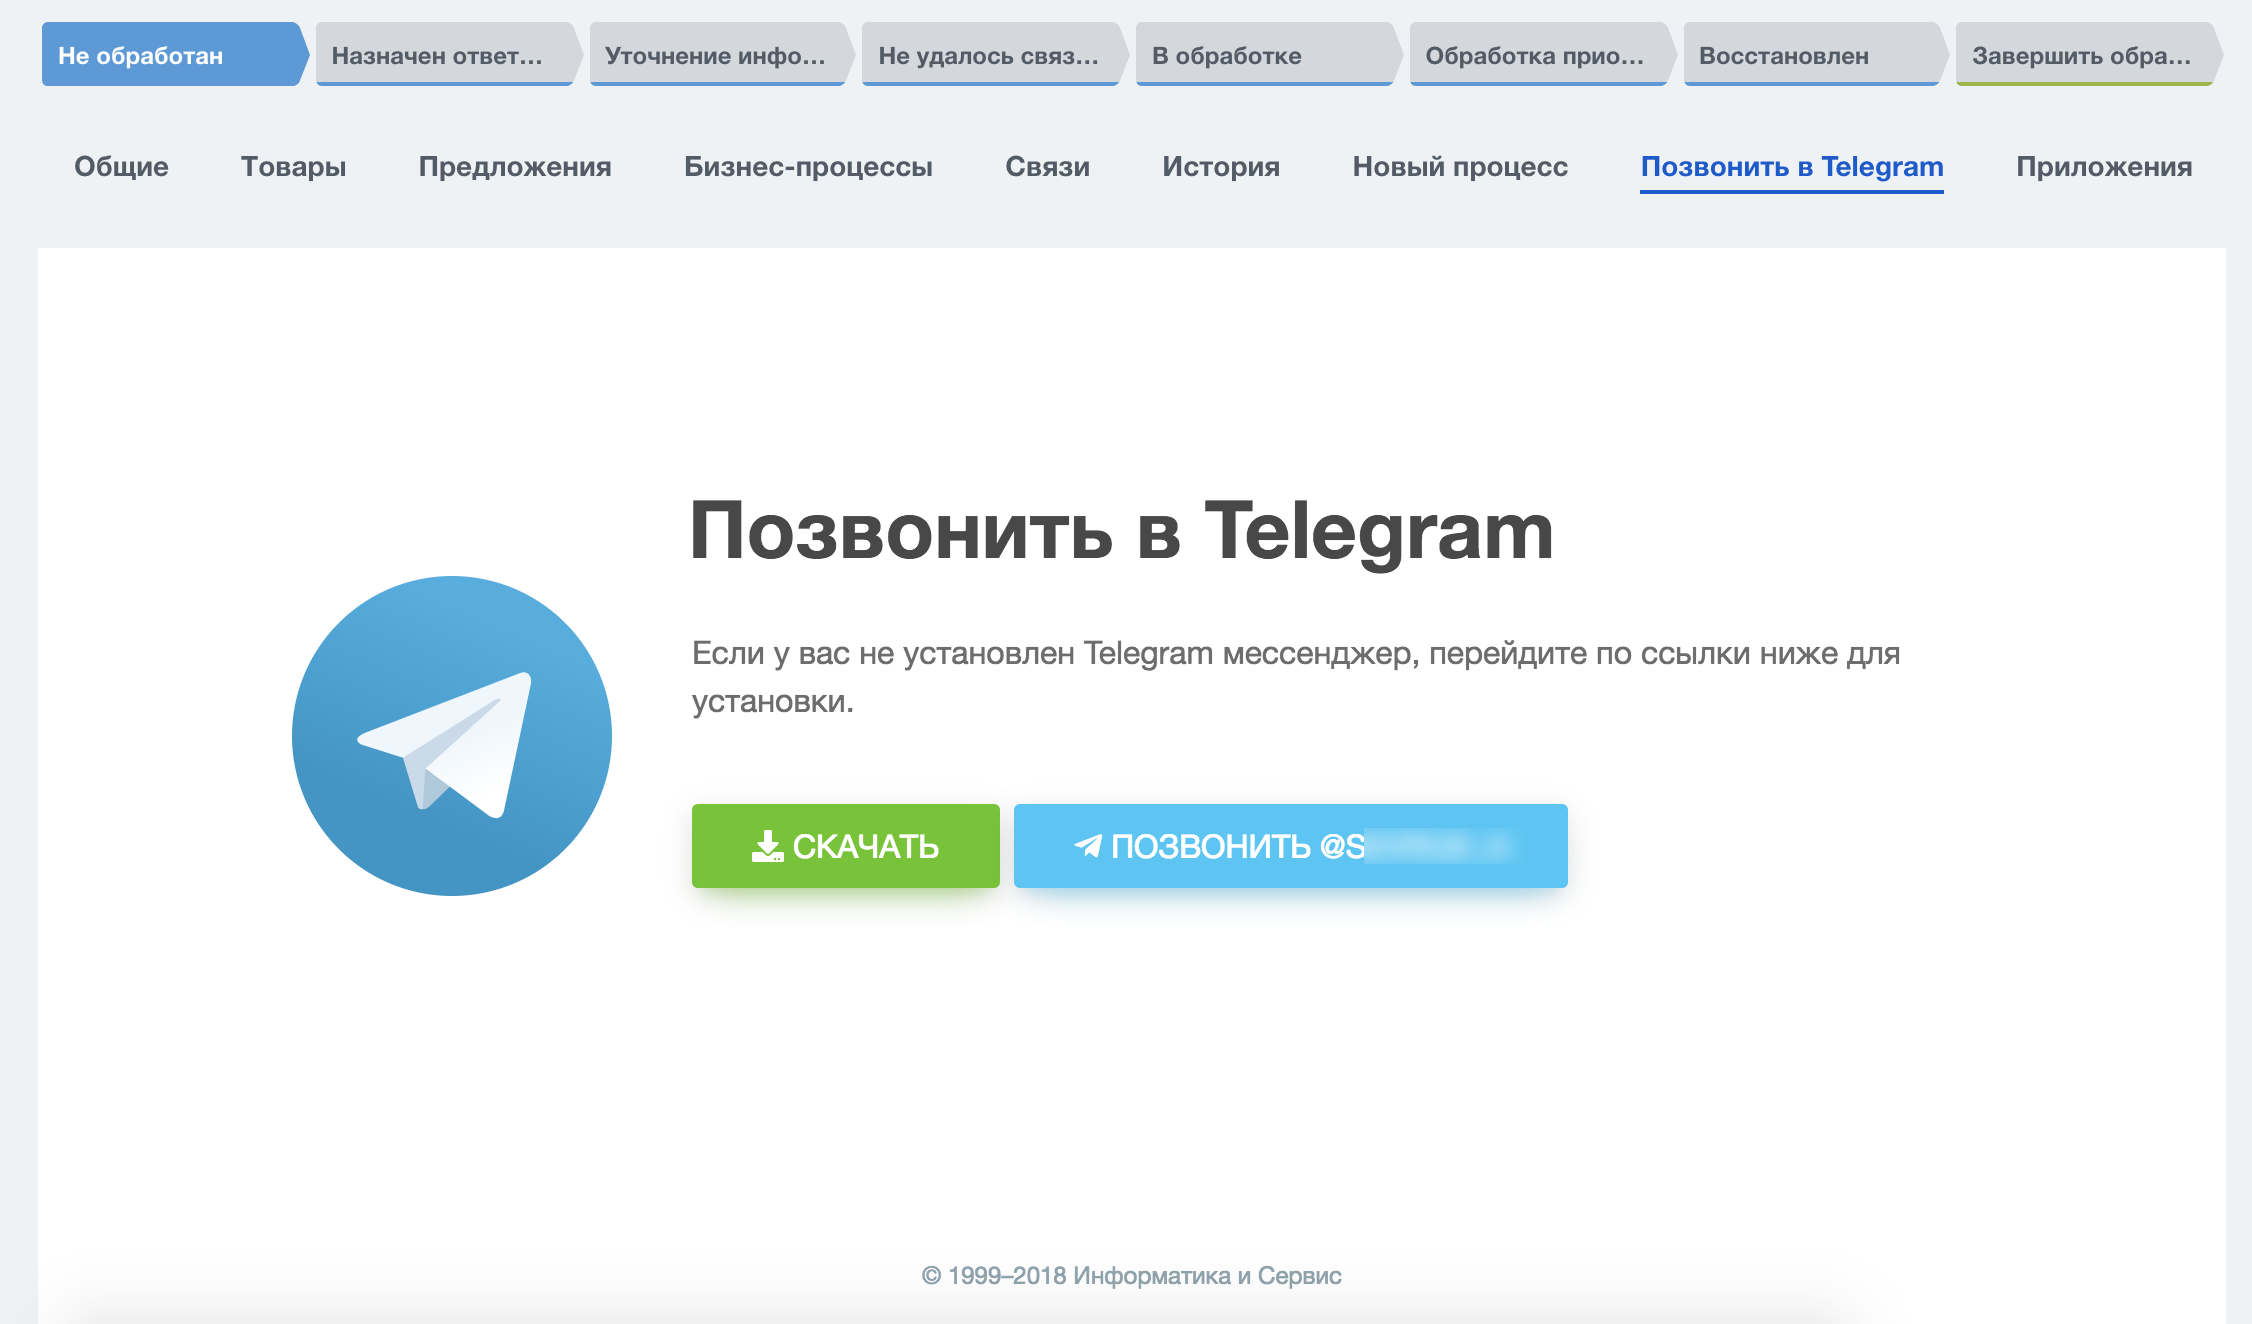 Телефон службы поддержки телеграмм в россии бесплатный фото 1